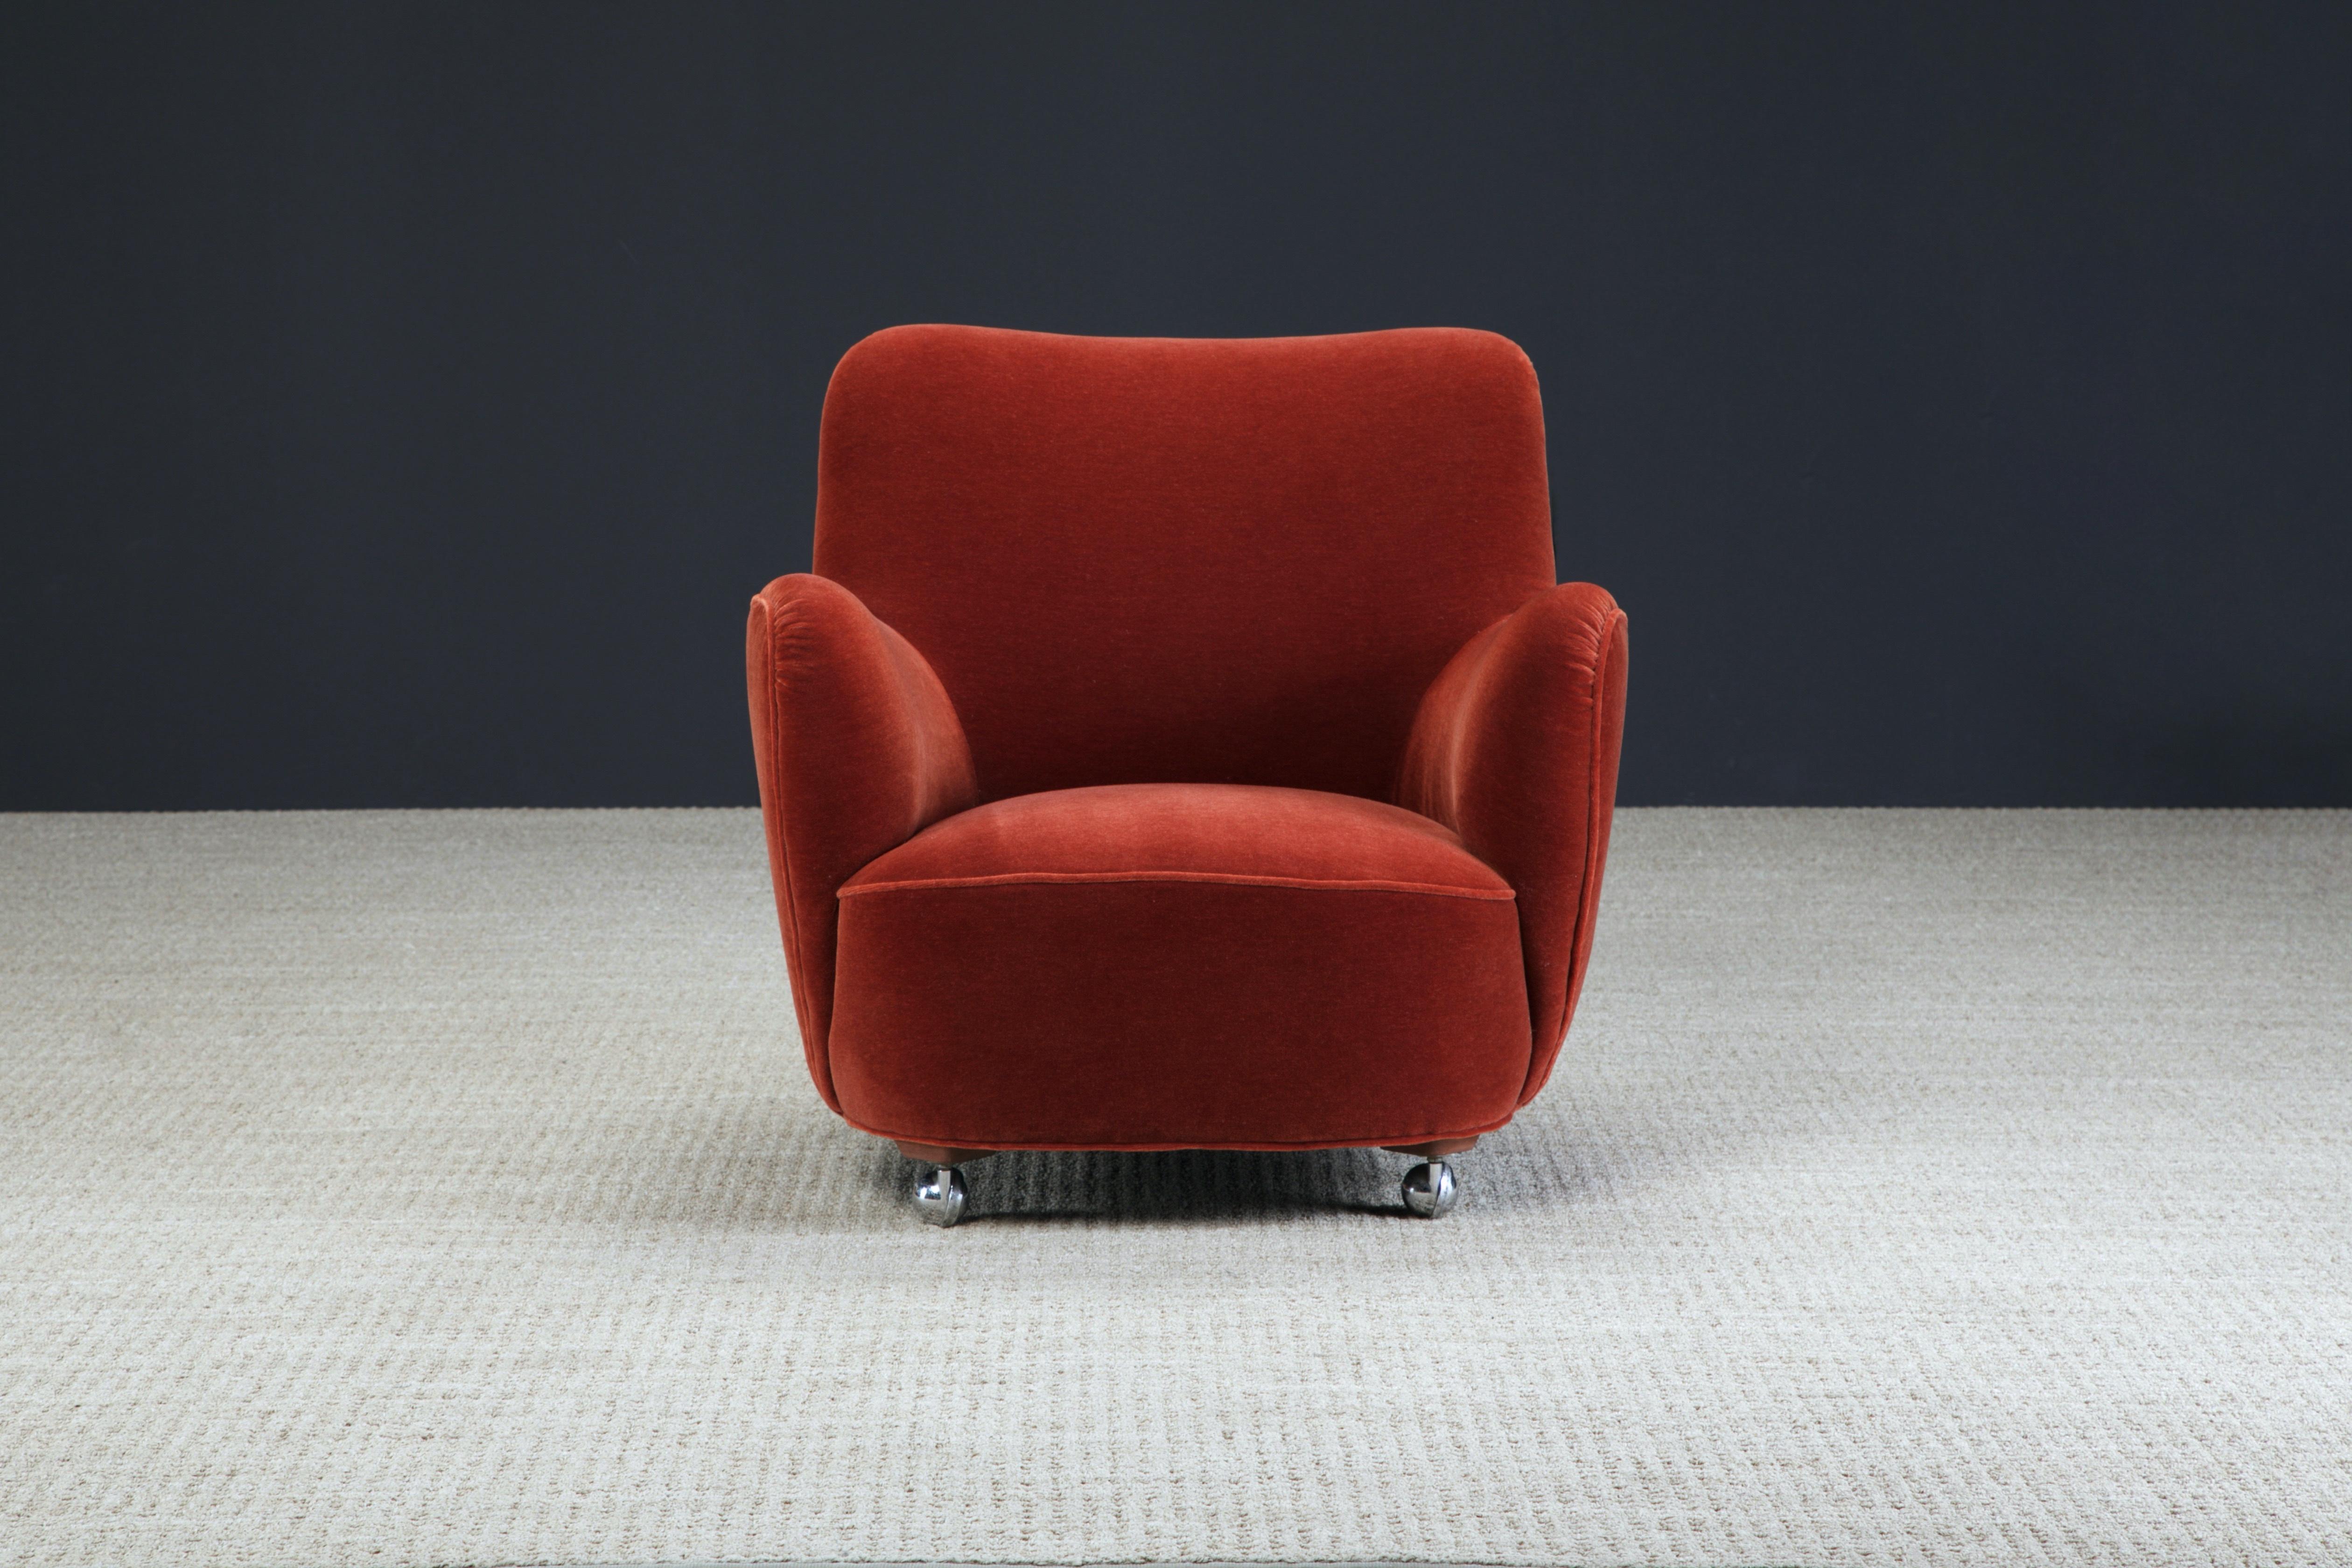 Dieses seltene Sammlerstück ist der Vladimir Kagan Modell #100-A 'Barrel Lounge Chair' auf Kugelrollen, entworfen 1947, signiert mit Vladimir Kagan Designs Label.

Der wunderschöne Samt ist rot, aber mit einem Hauch von verbranntem Orange, was ihm